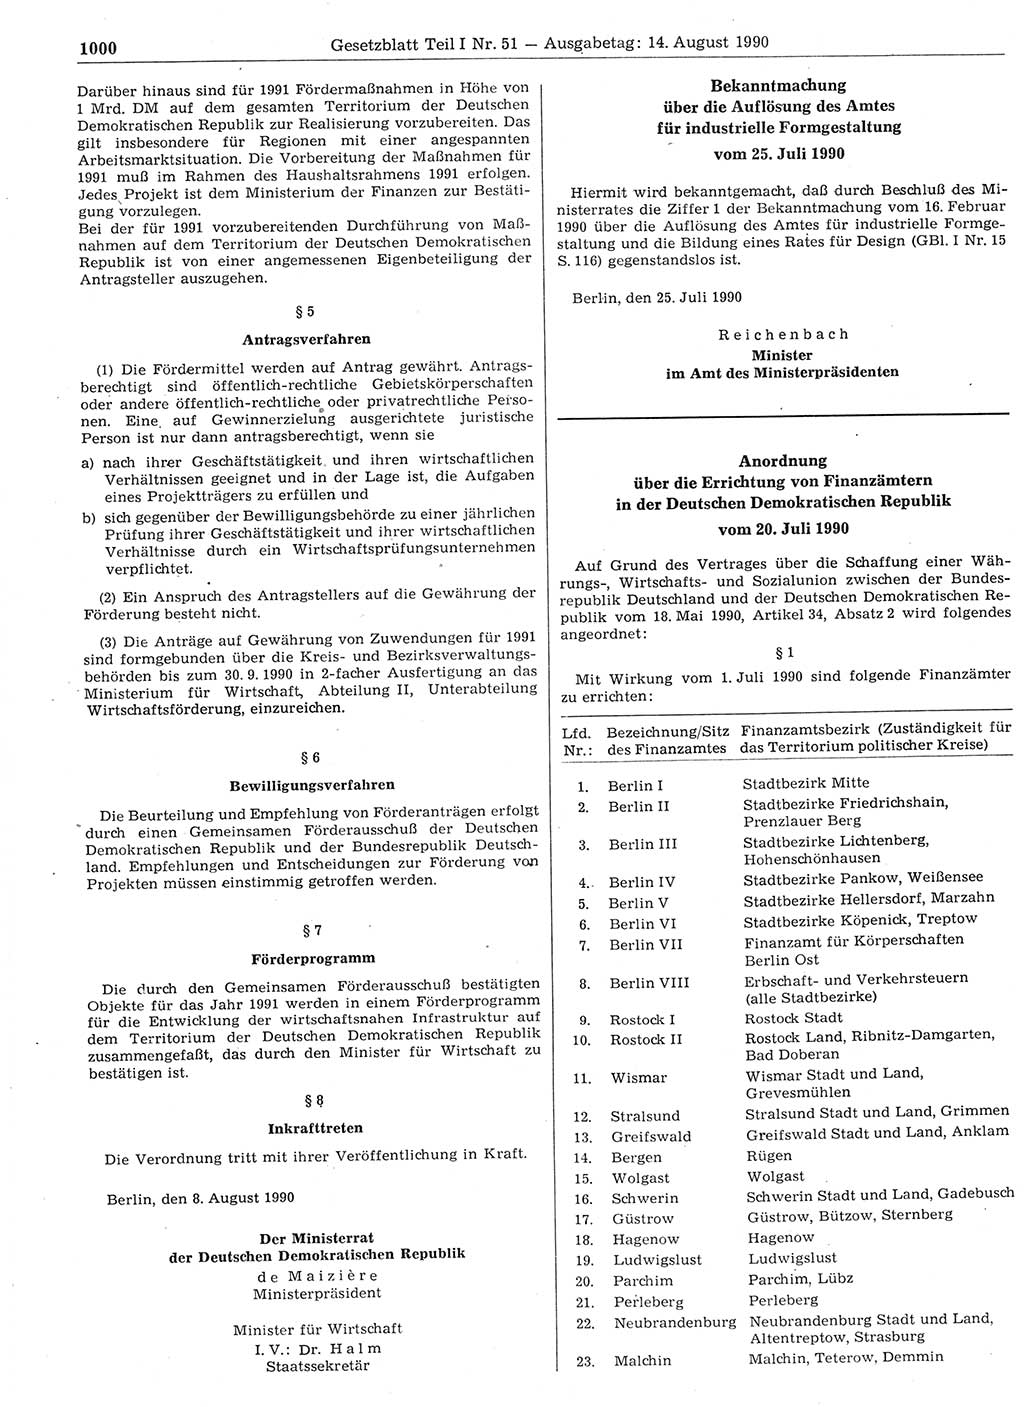 Gesetzblatt (GBl.) der Deutschen Demokratischen Republik (DDR) Teil Ⅰ 1990, Seite 1000 (GBl. DDR Ⅰ 1990, S. 1000)